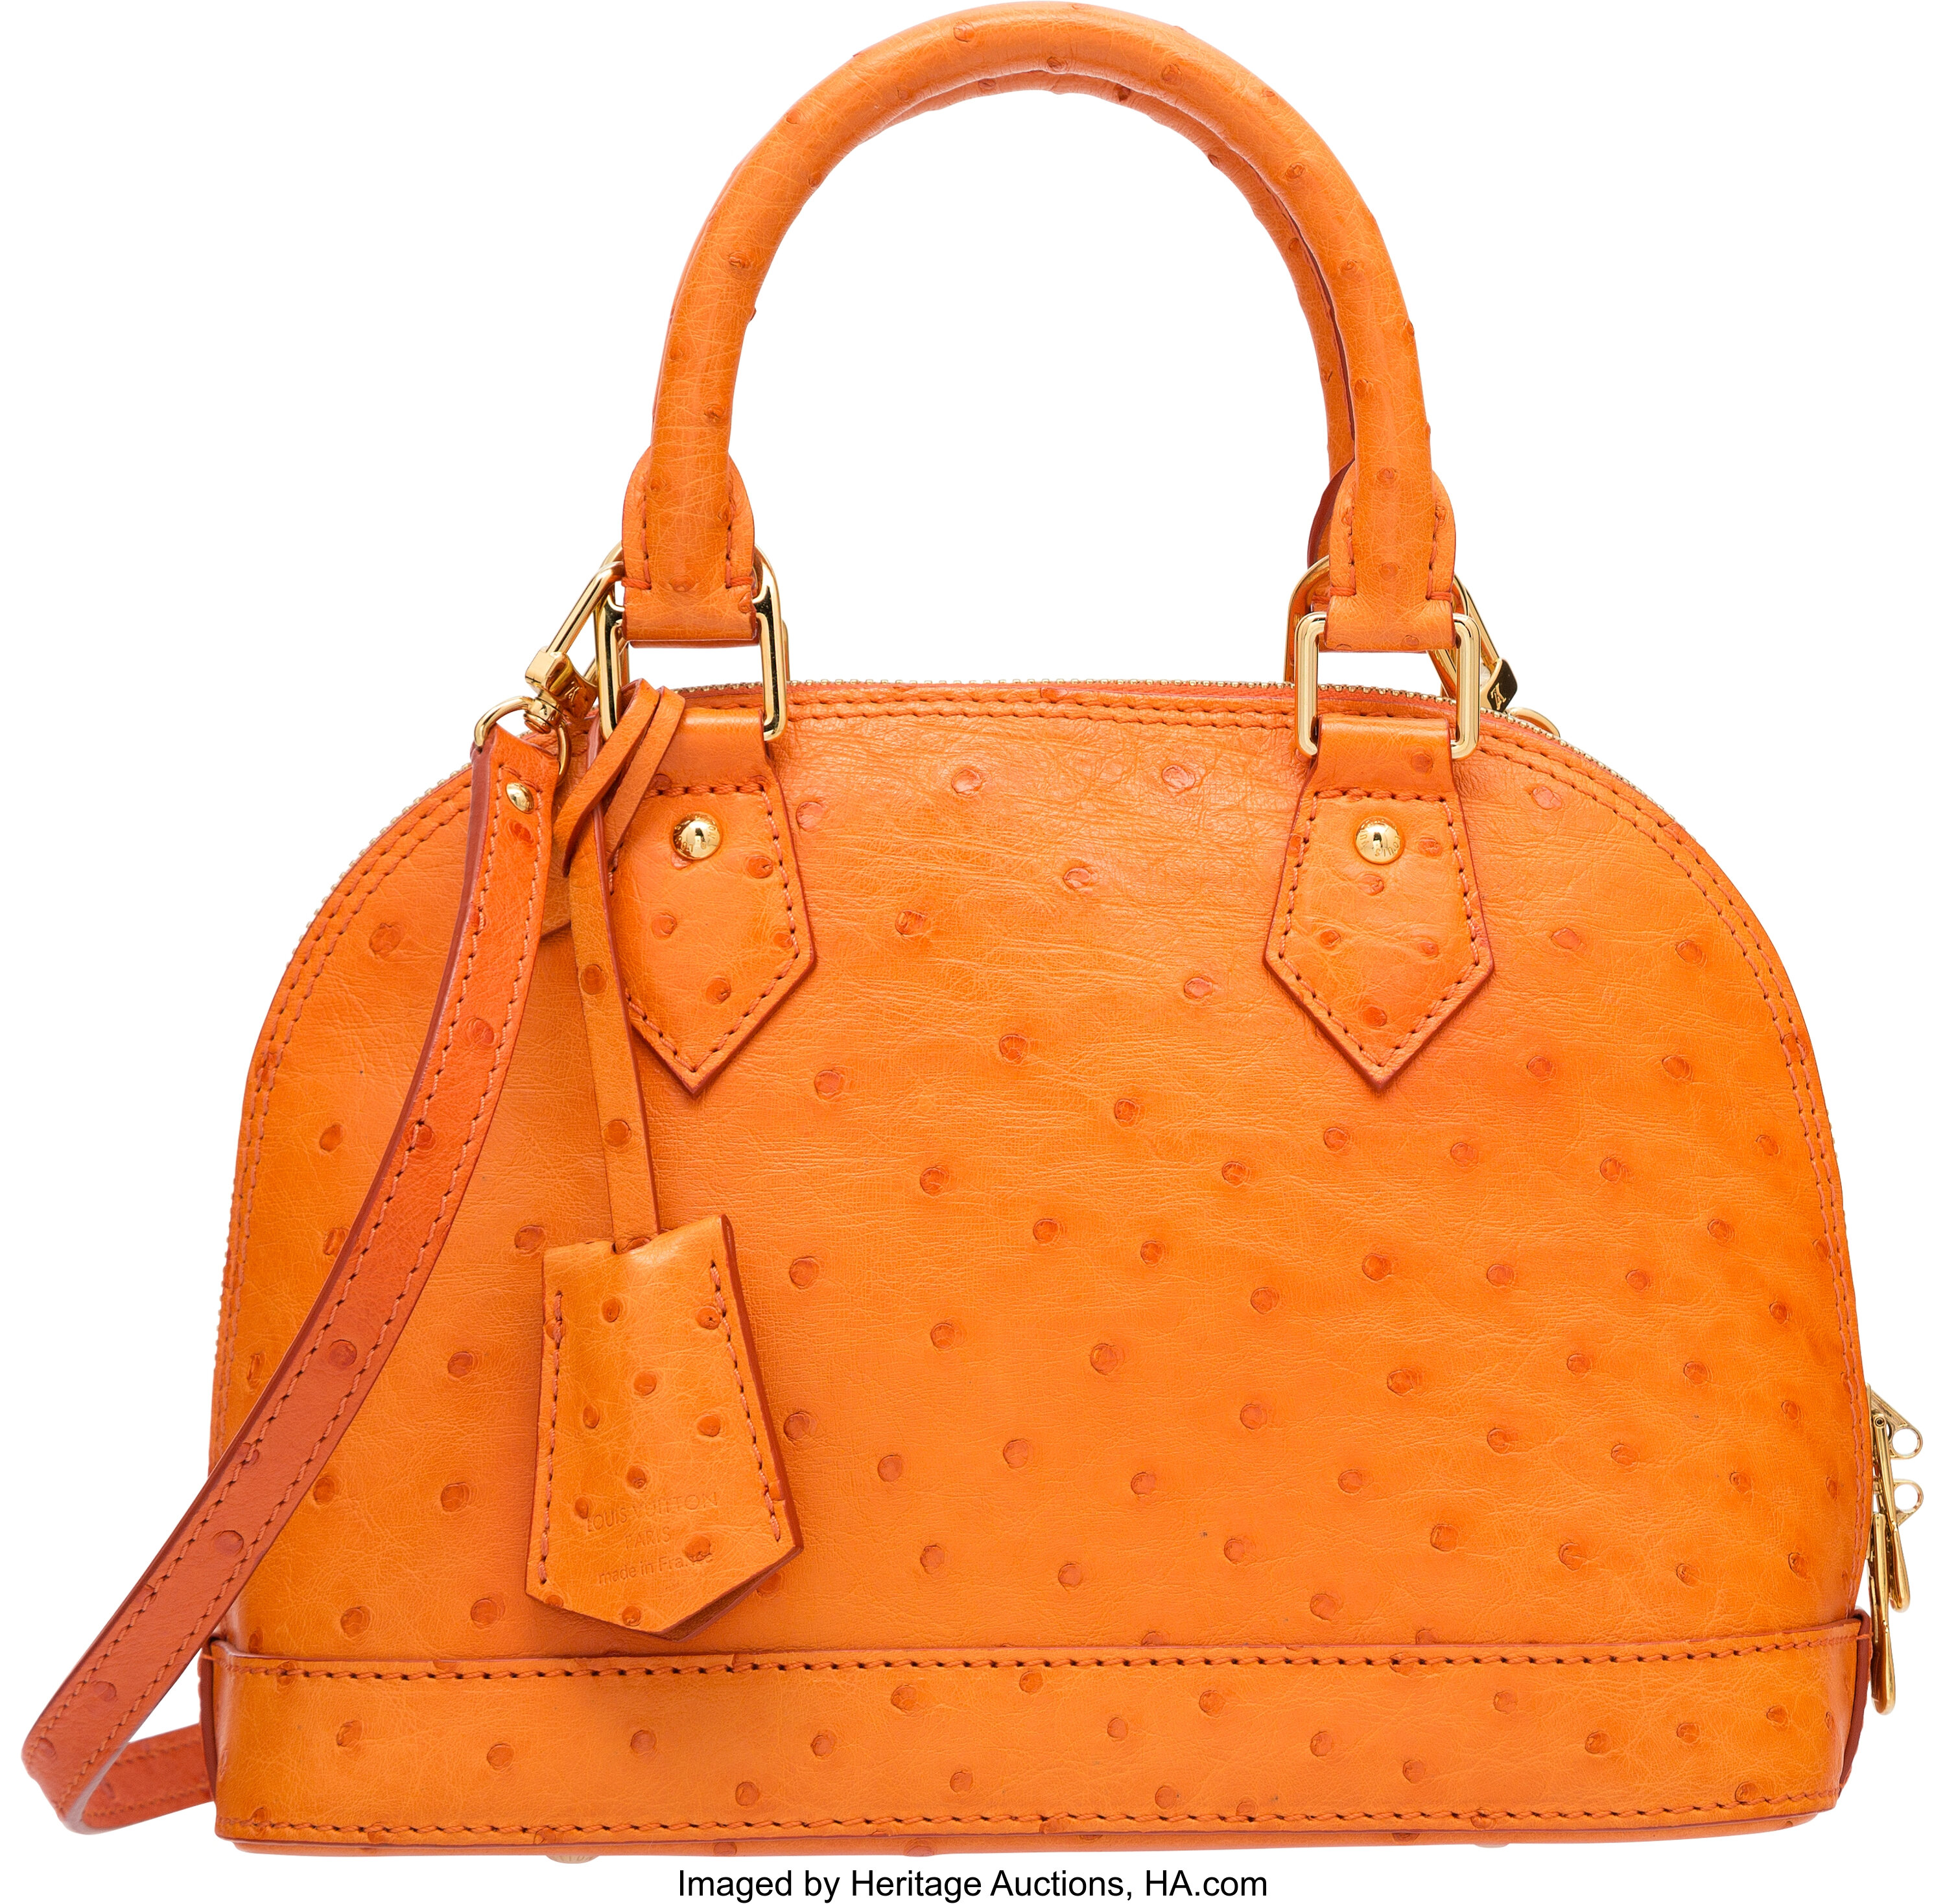 Sold at Auction: UNAUTHENTICATED Louis Vuitton Paris Handbag